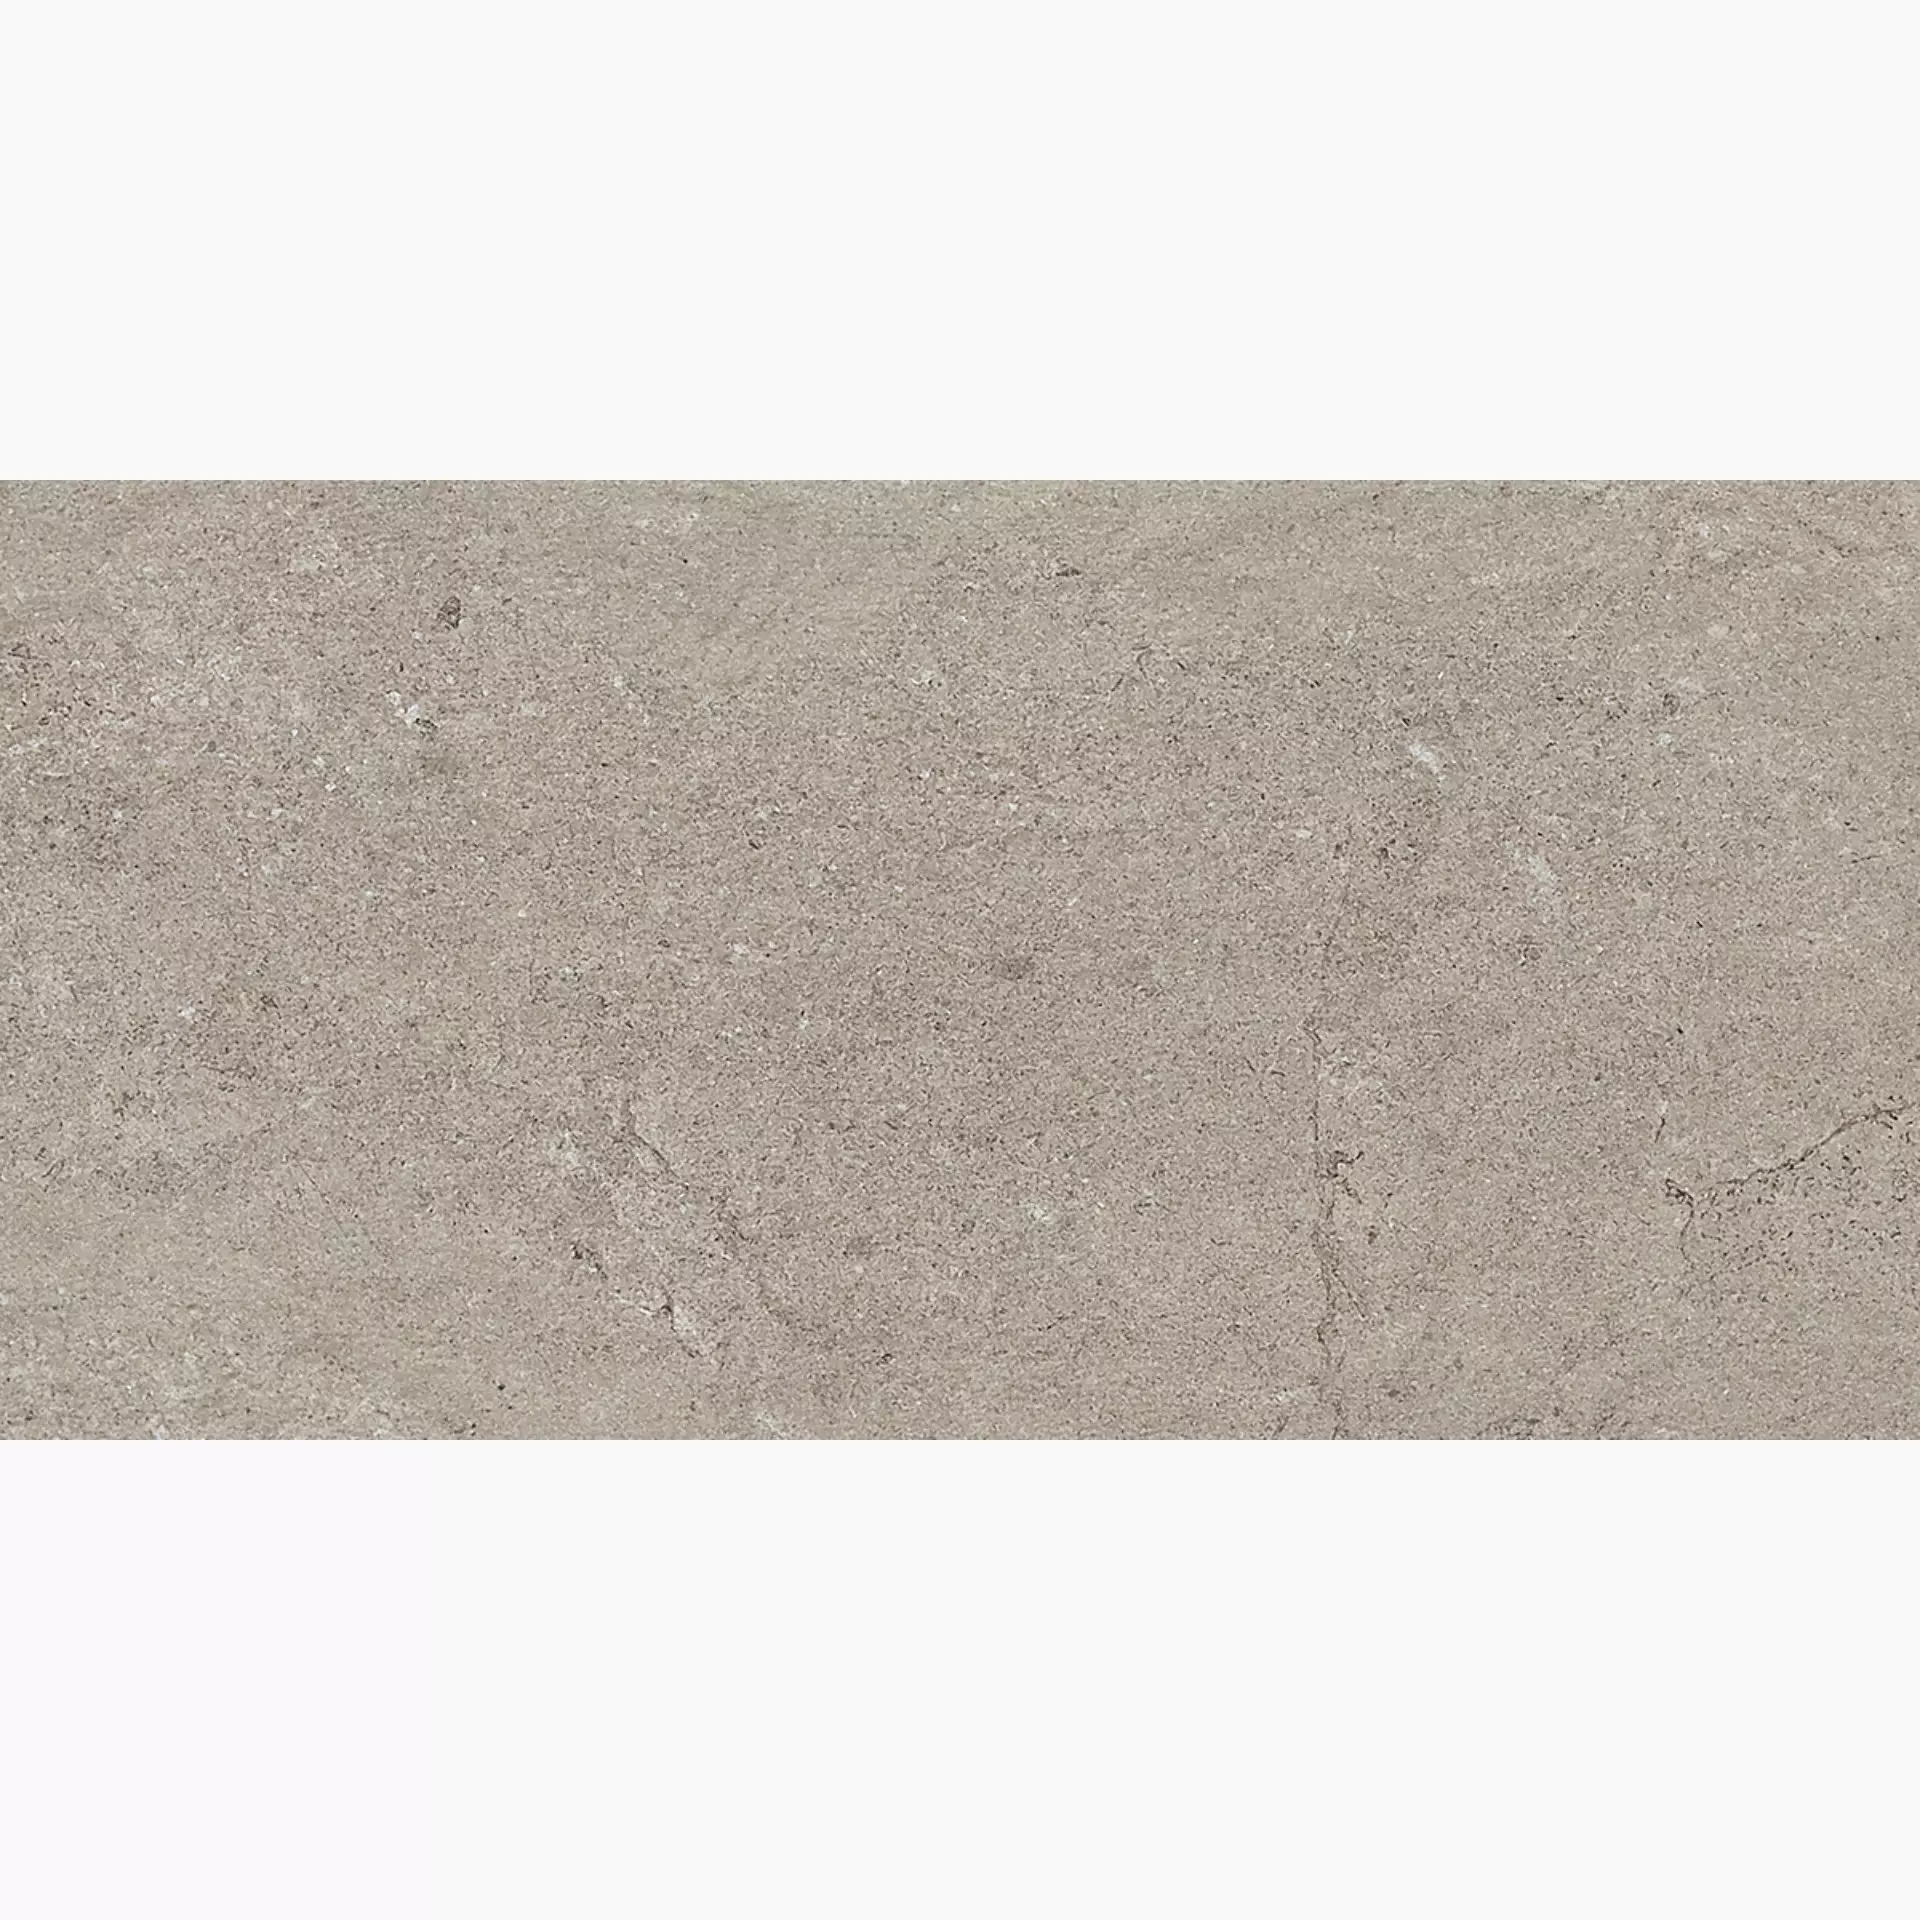 Gigacer Quarry Gravel Stone Matt 12QUAGRASTMAT3060 30x60cm 12mm